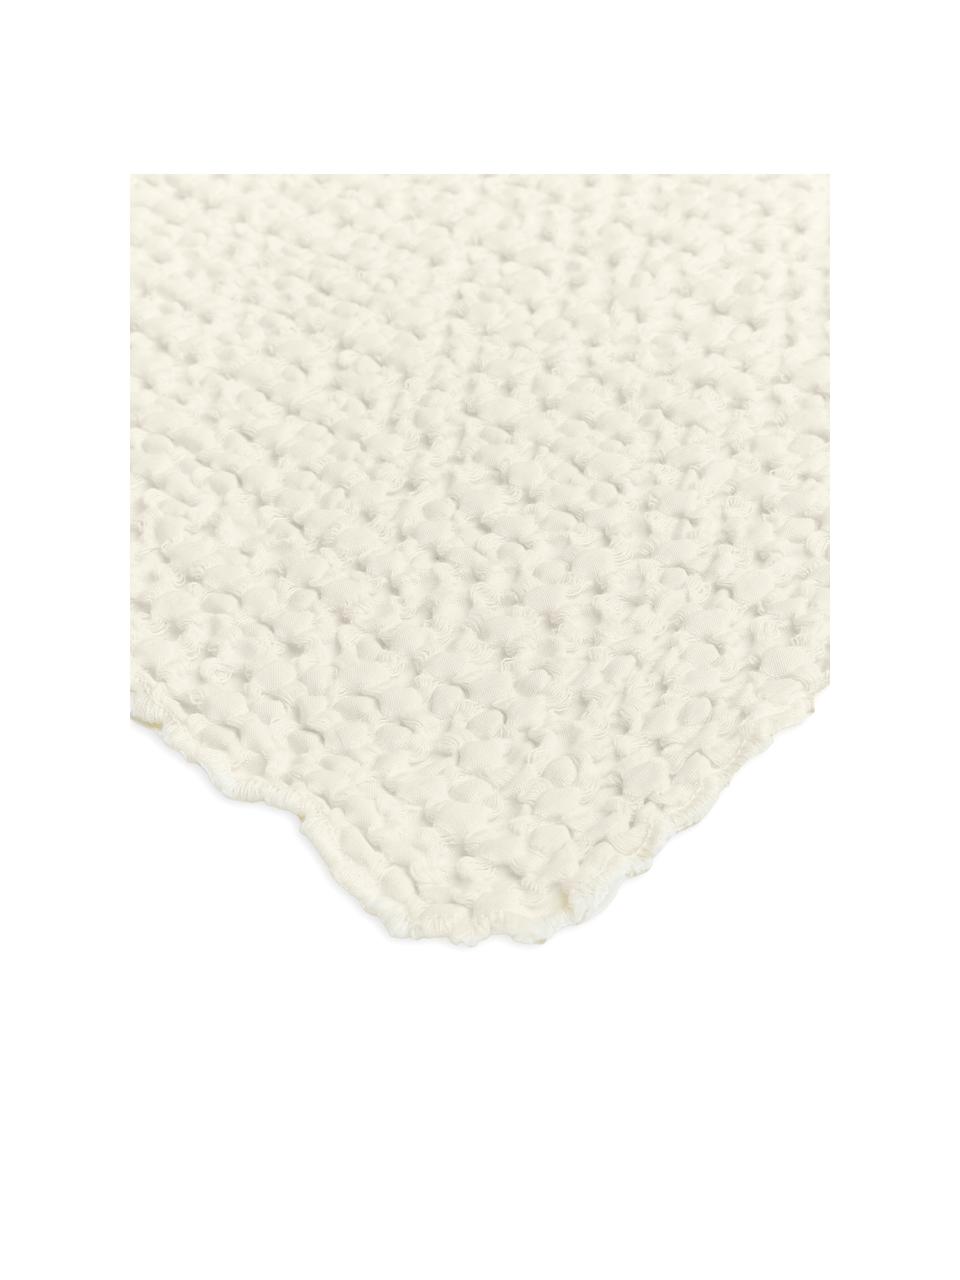 Tagesdecke Vigo mit strukturierter Oberfläche, 100% Baumwolle, Creme, B 220 x L 240 cm (für Betten bis 180 x 200 cm)